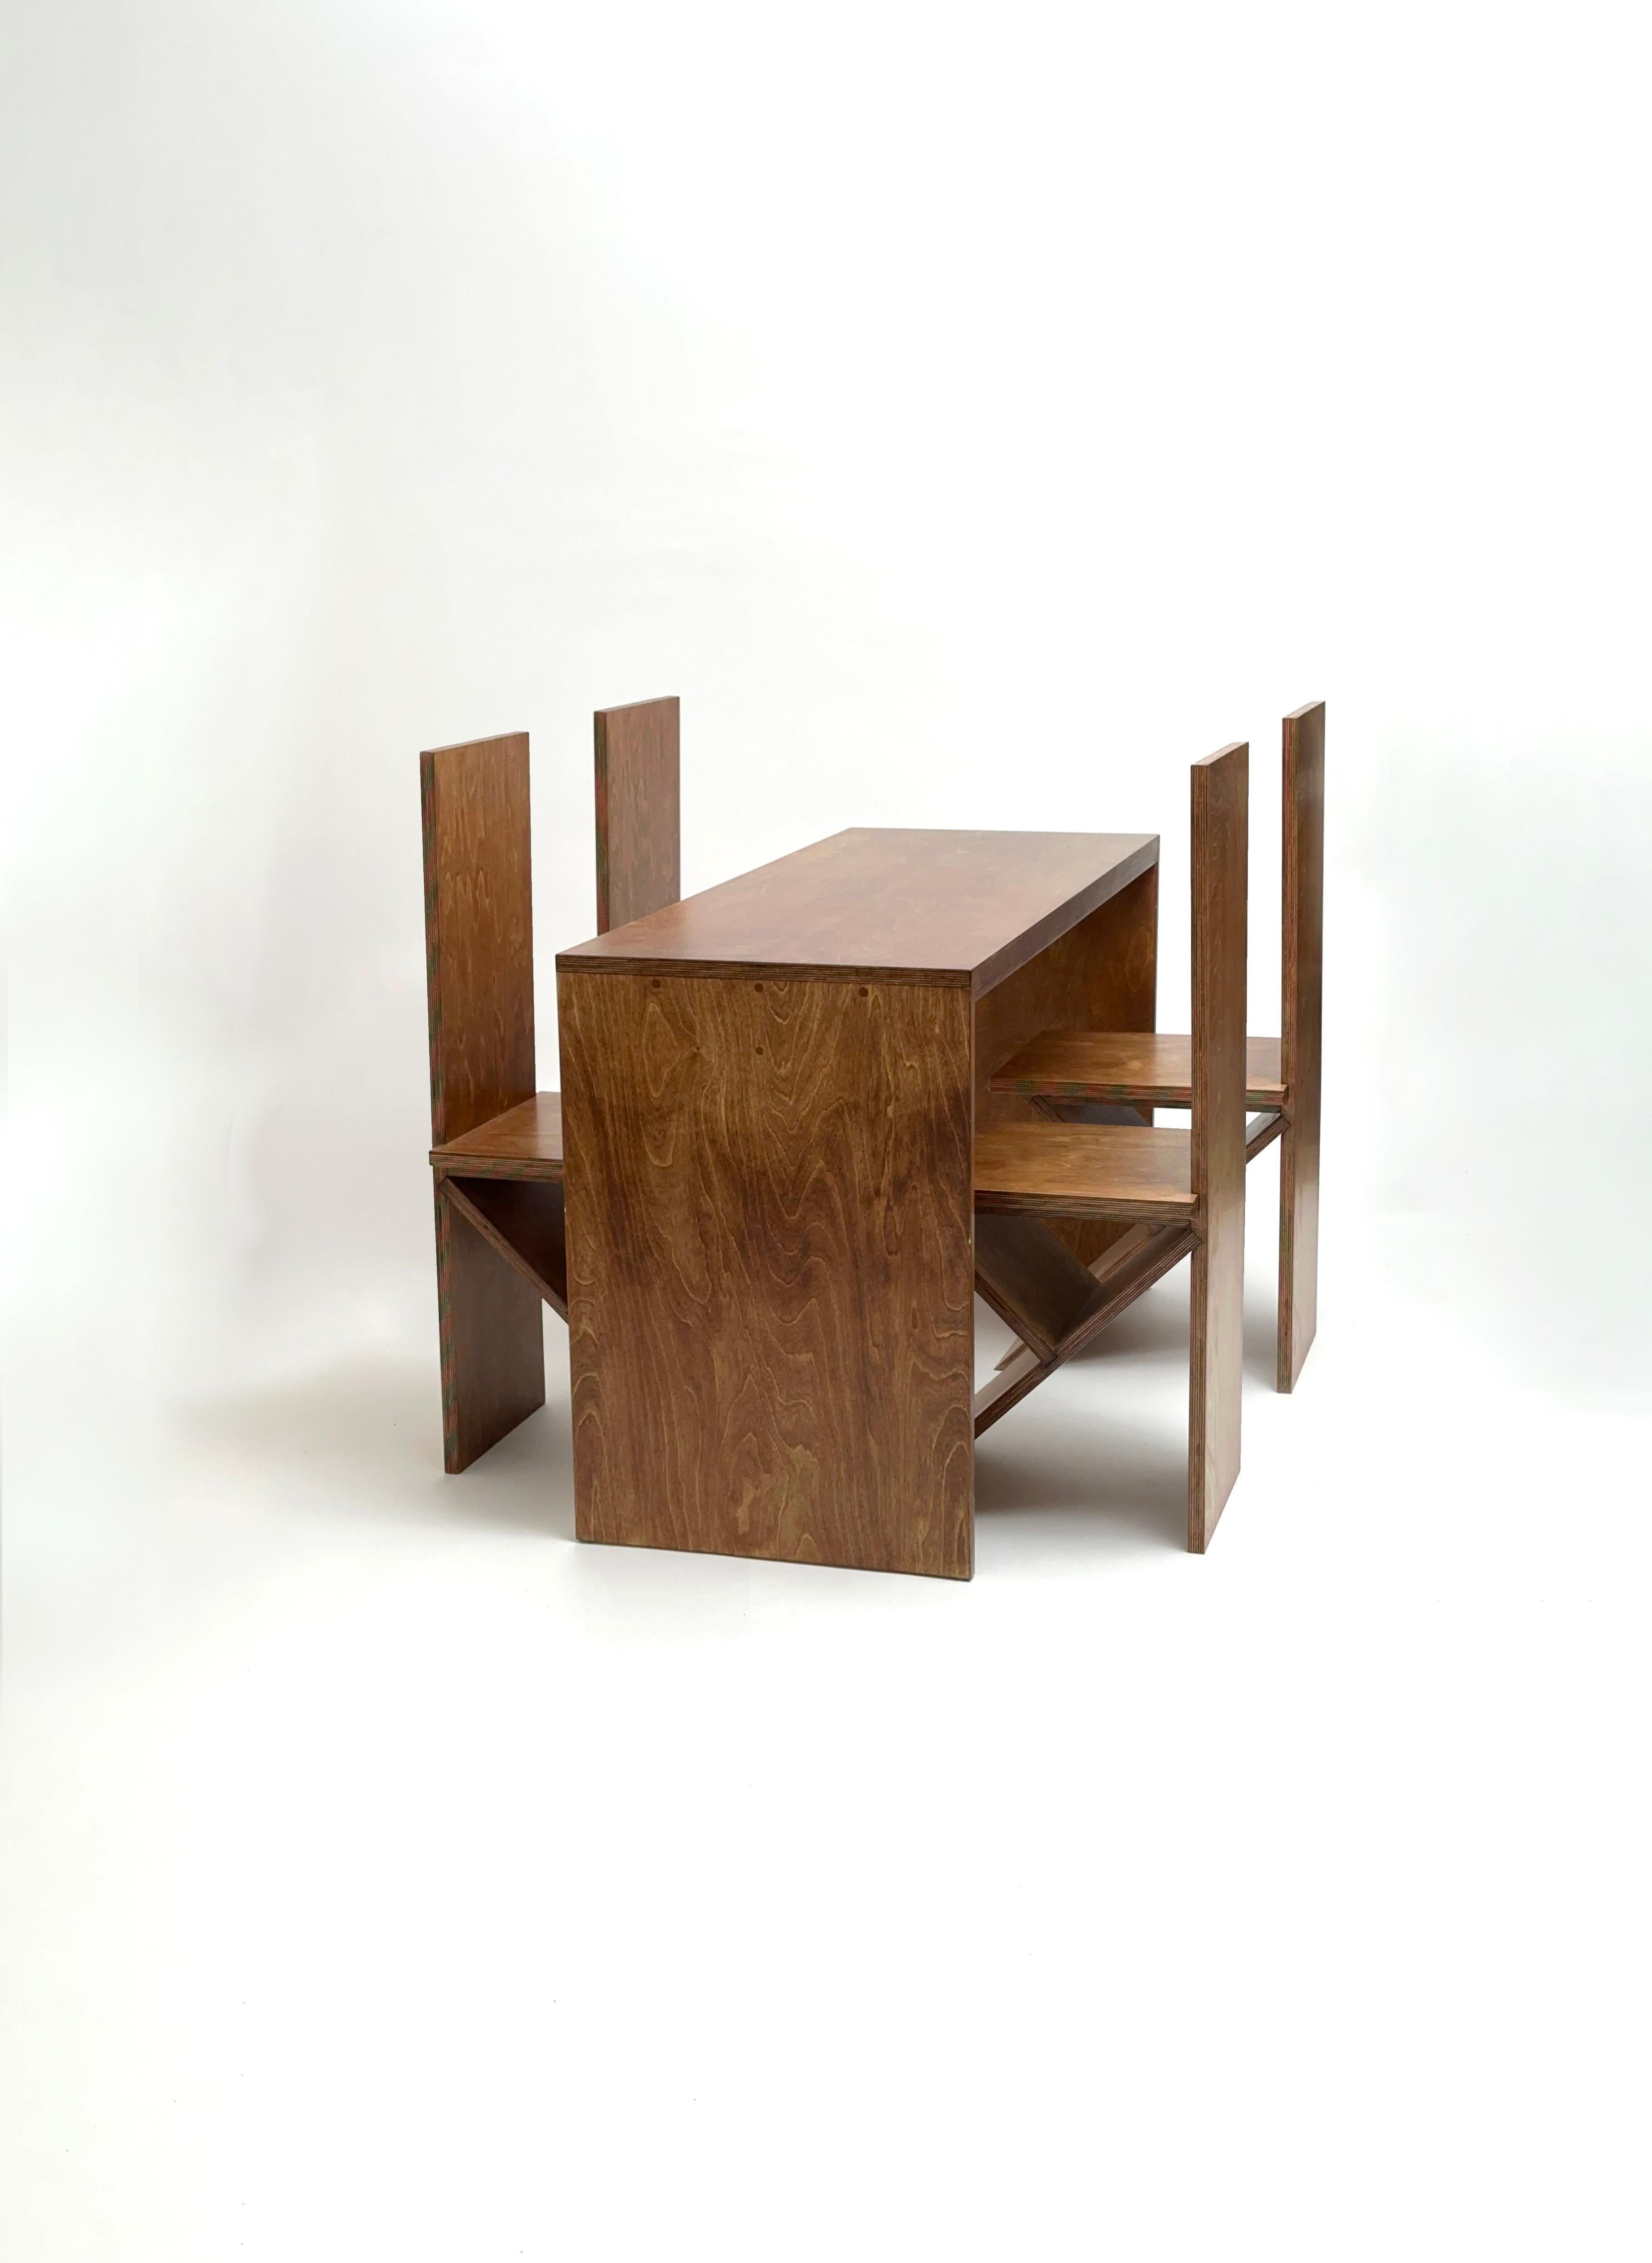 Ensemble de salle à manger par Goons
Dimensions :  
Table : L 130 x D 50 x H 74 cm
Chaise : 35 x 40 x 95 cm
MATERIAL : Bois.

Goons est situé à Paris, en France. Toutes leurs créations sont réalisées en bois.